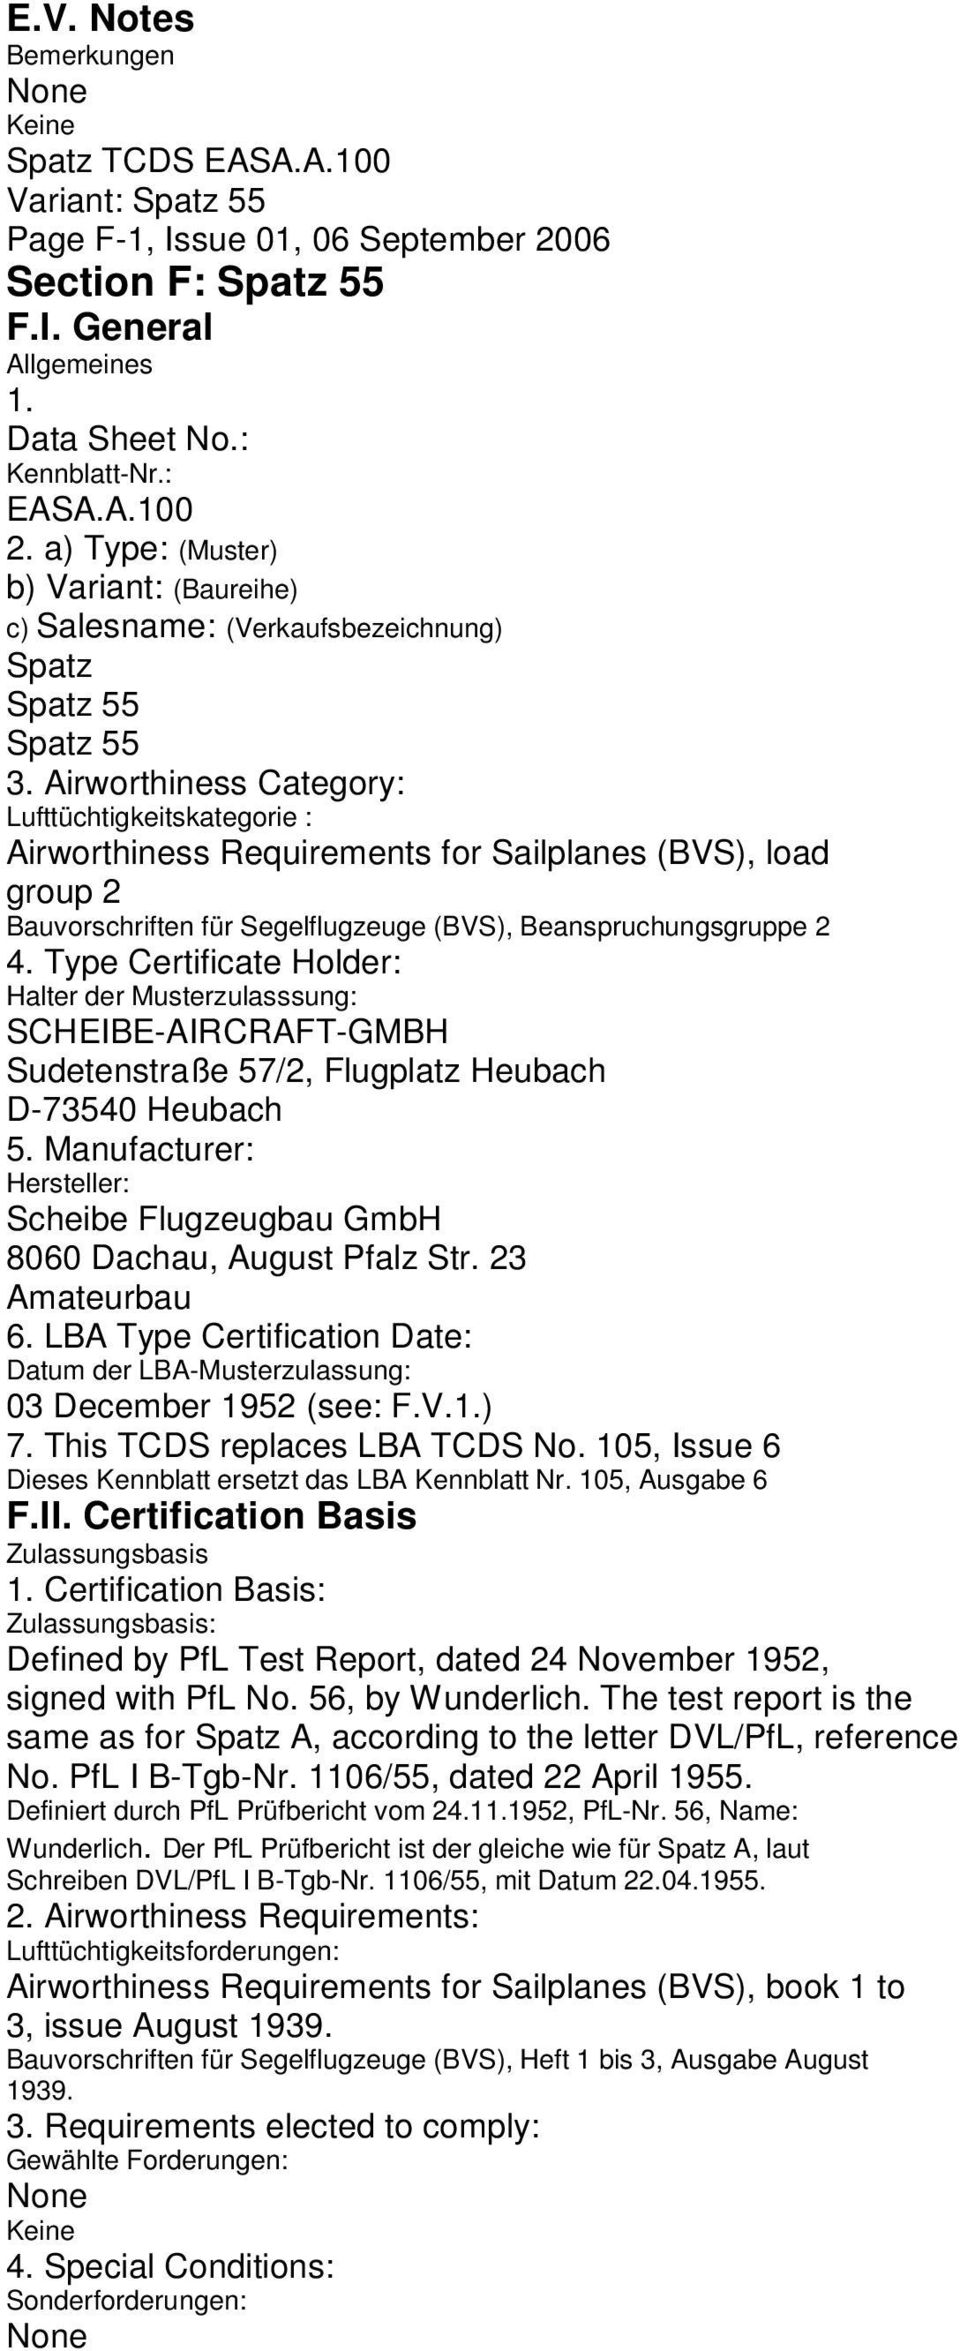 Airworthiness Category: Lufttüchtigkeitskategorie : Airworthiness Requirements for Sailplanes (BVS), load group 2 Bauvorschriften für Segelflugzeuge (BVS), Beanspruchungsgruppe 2 4.